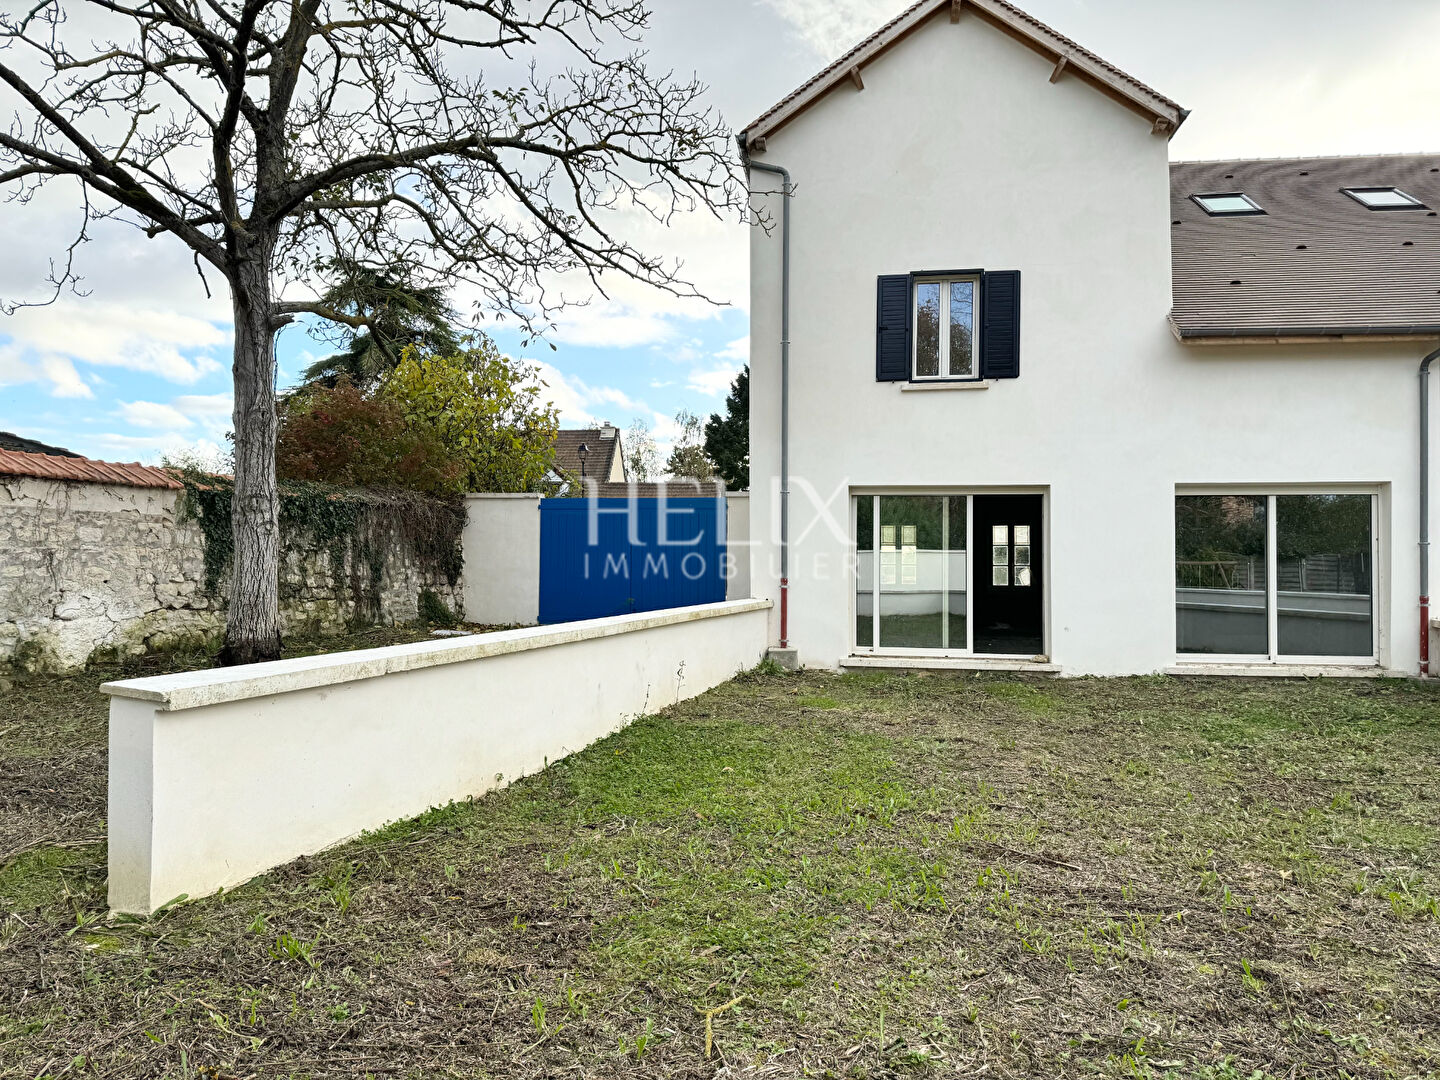 A vendre maison 6 pièces 150 M², un projet personnalisé à Saint-Nom-La- Bretèche